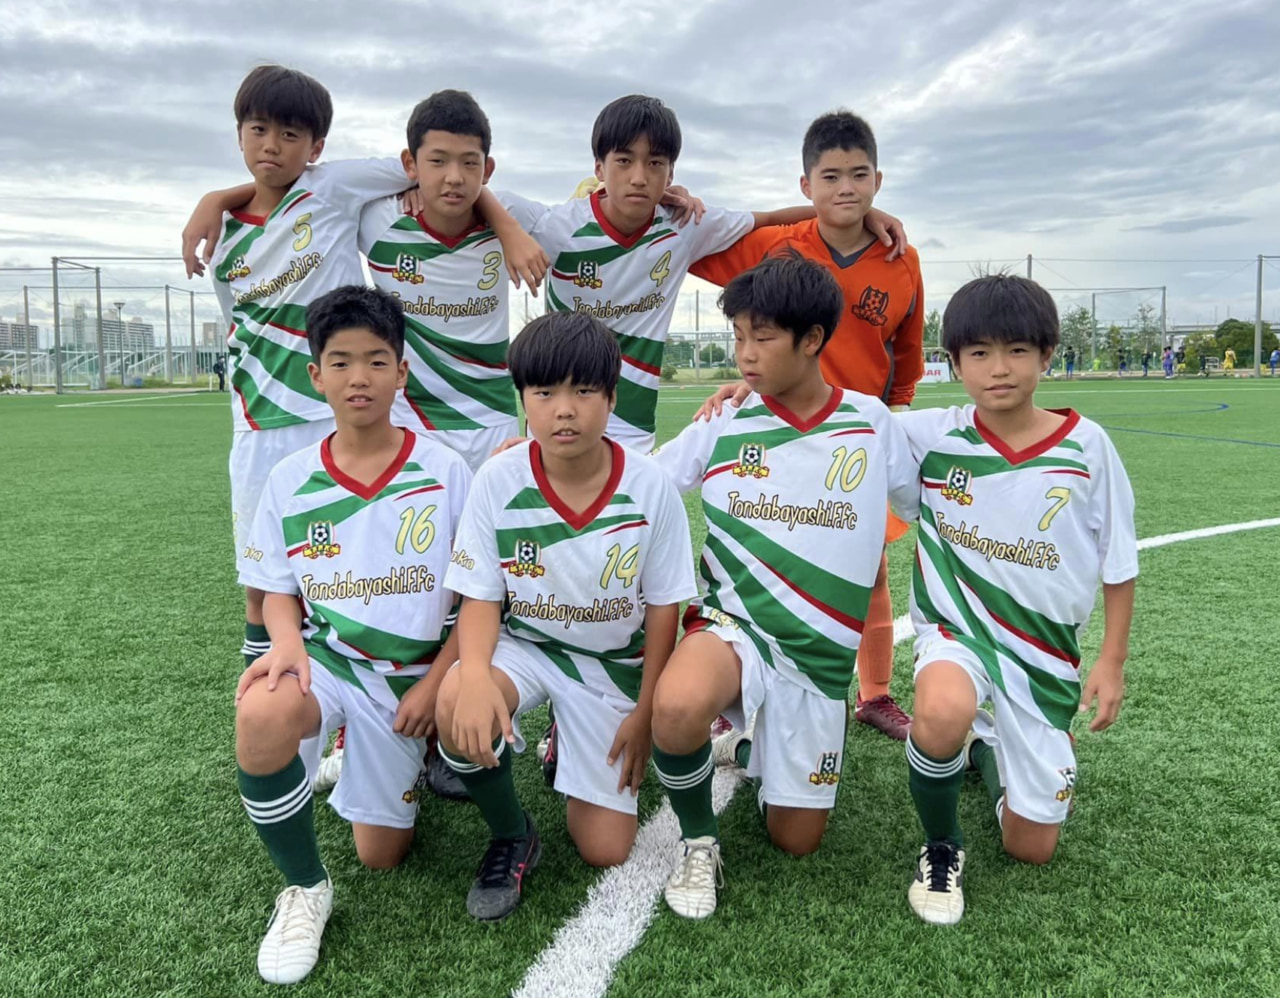 22年度 U 12リーグ第46回全日本少年サッカー大会 南河内地区予選 大阪 代表4チーム決定 ジュニアサッカーnews